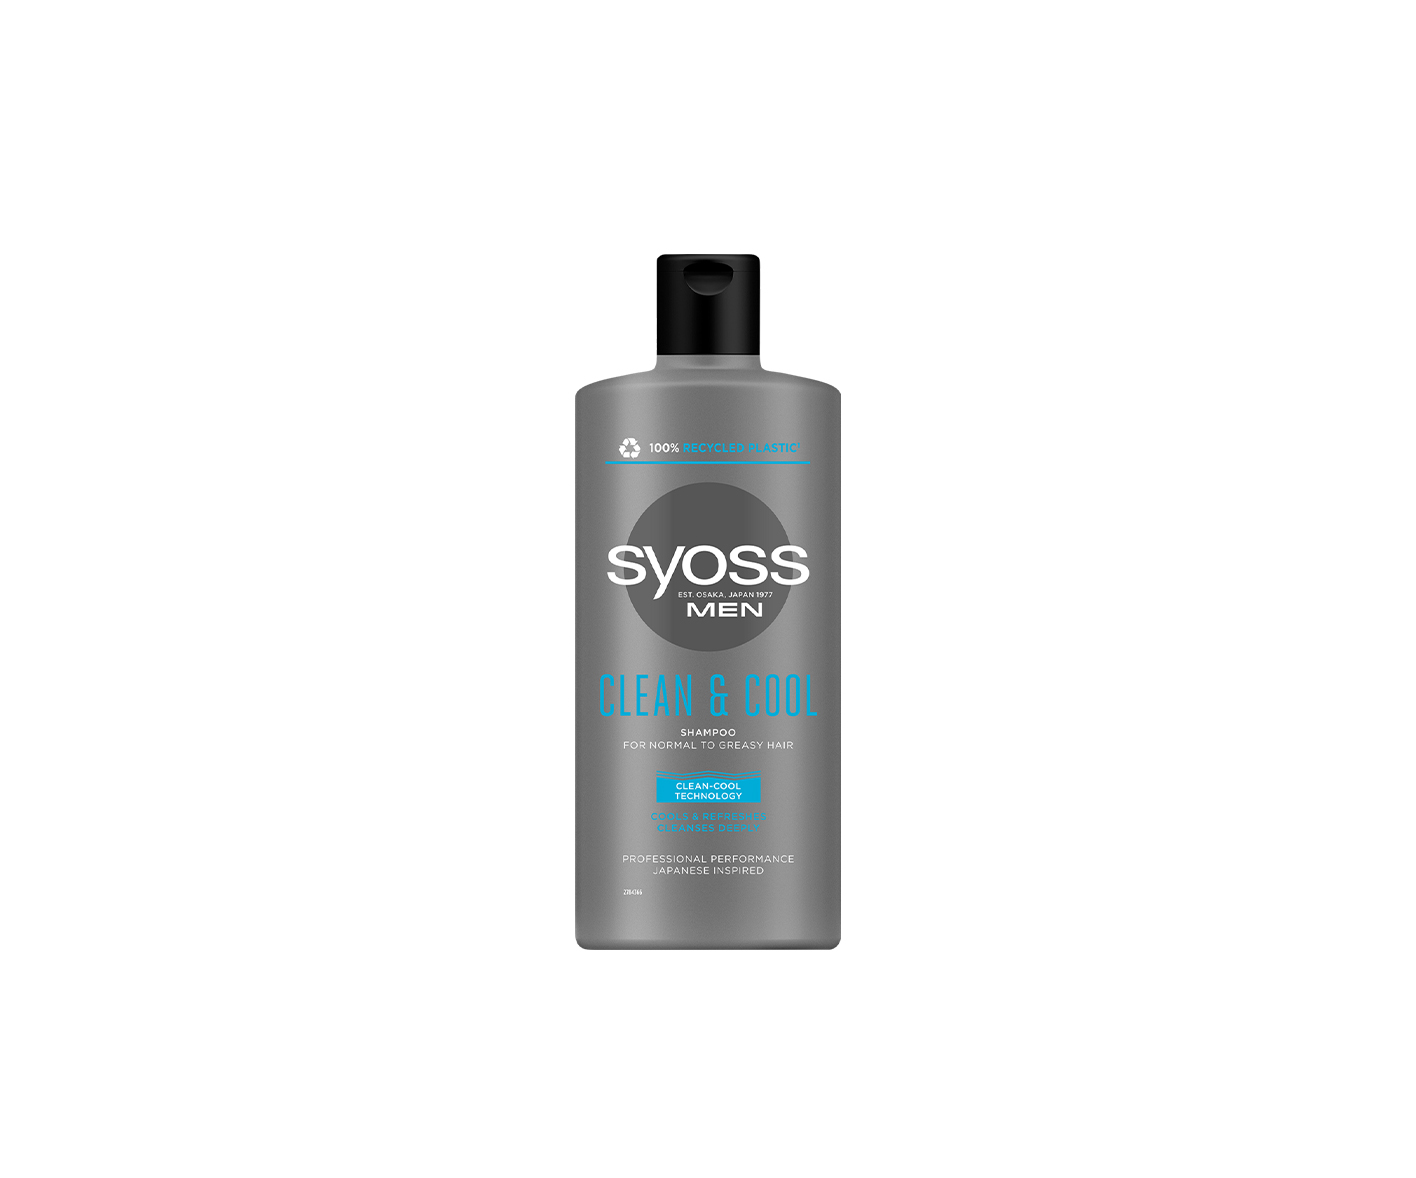 SYOSS MEN Clean & Cool, schampo för män